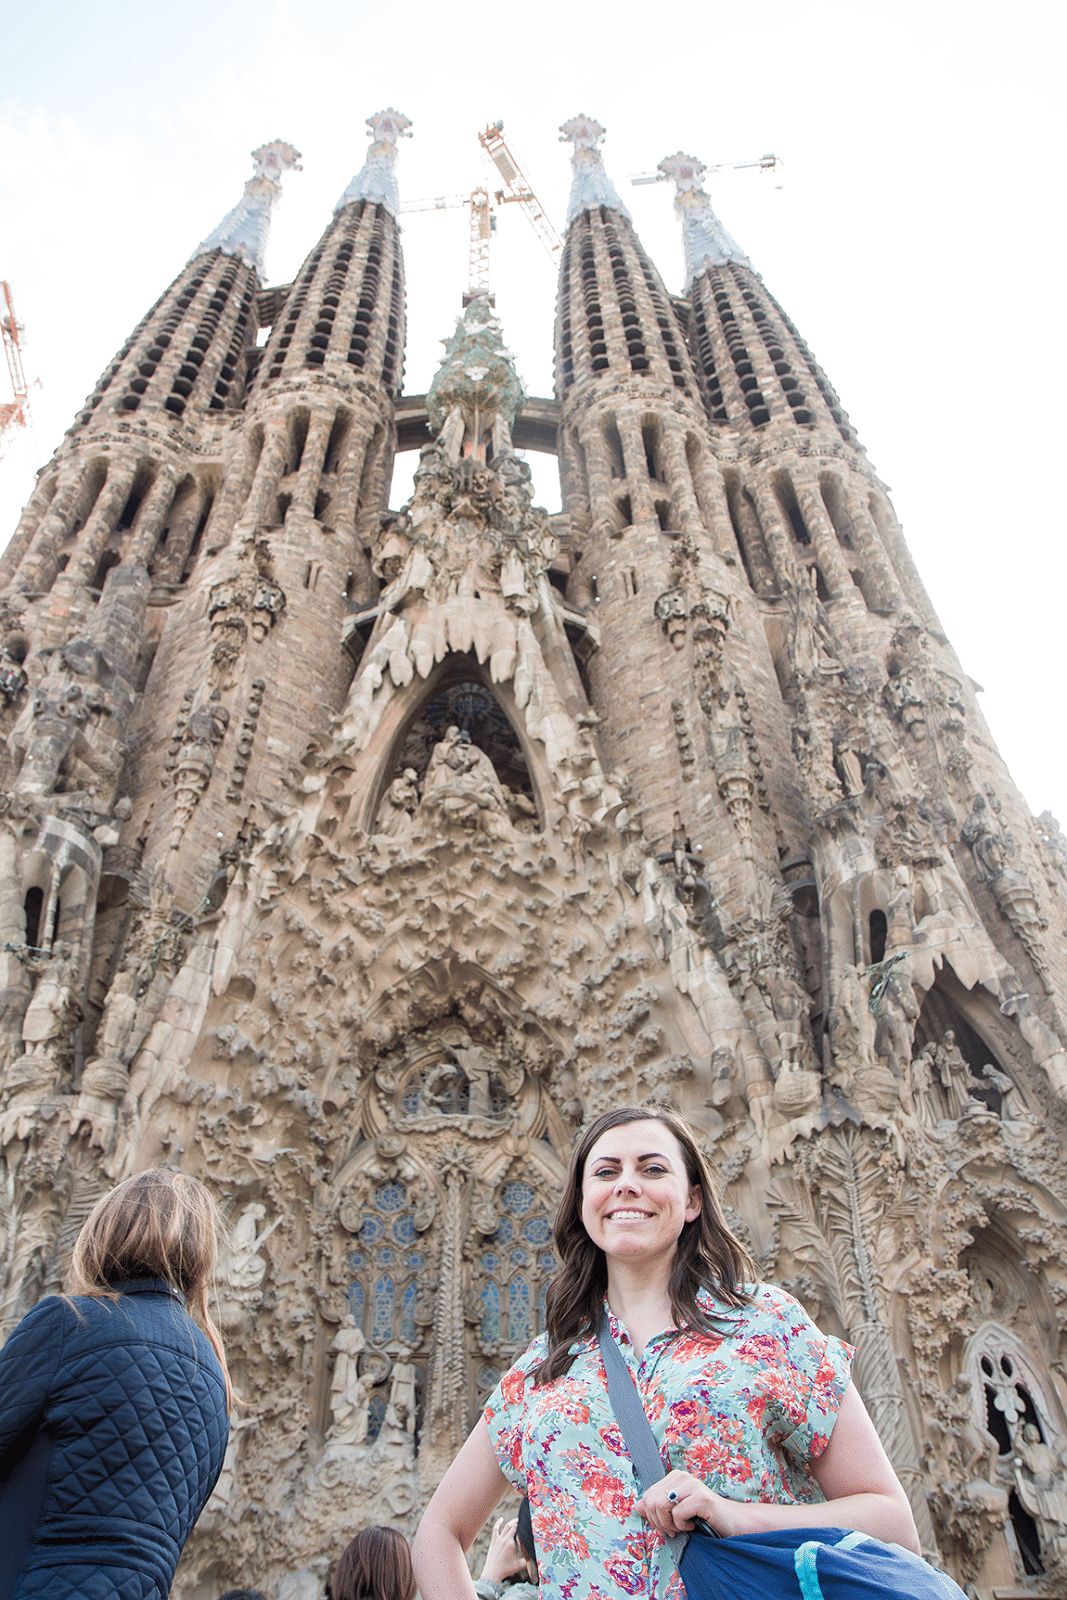 La Sagrada Familia travel information. 